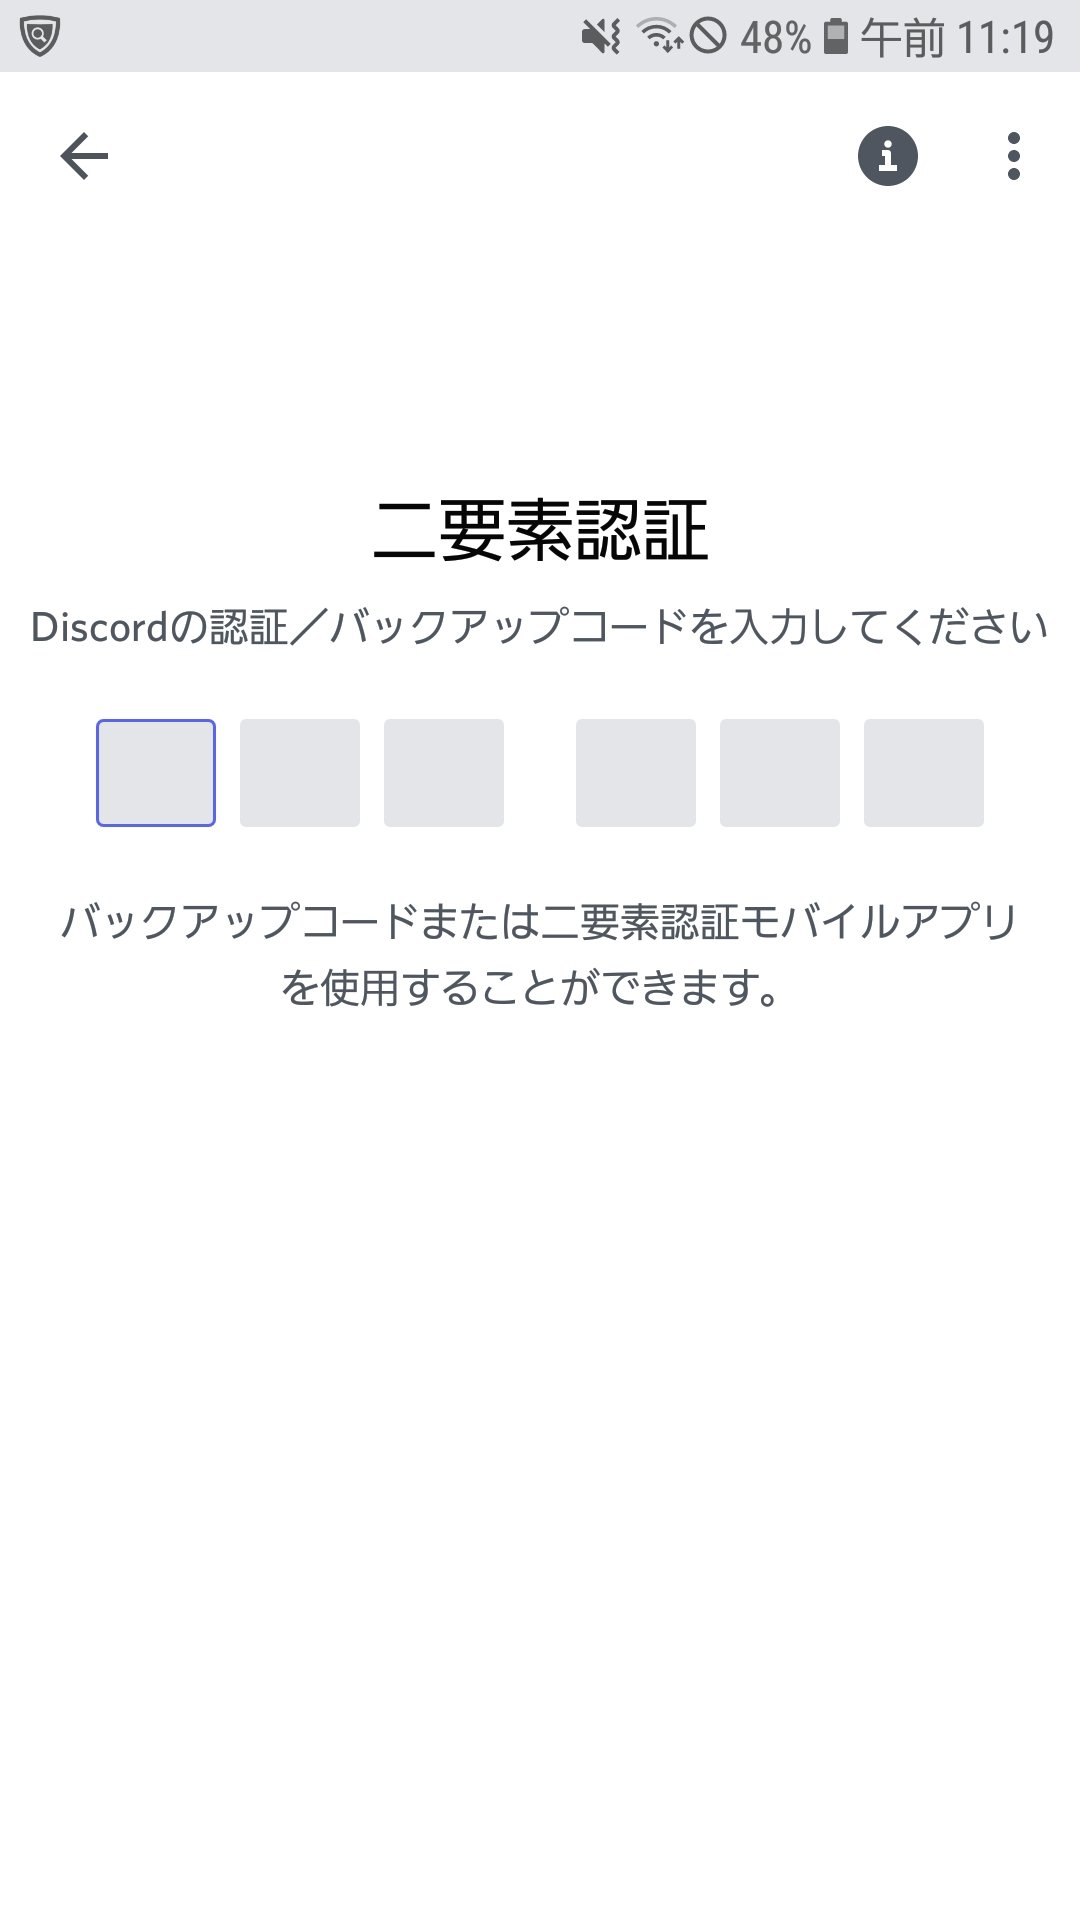 Discord Japan Jannu A 認証コードが正確でないという意味です バックアップコードをお持ちでない場合は 二度とログインすることができません アカウント削除が必要な場合は 問題の Discordアカウントにリンクされたeメールドレスで T Co